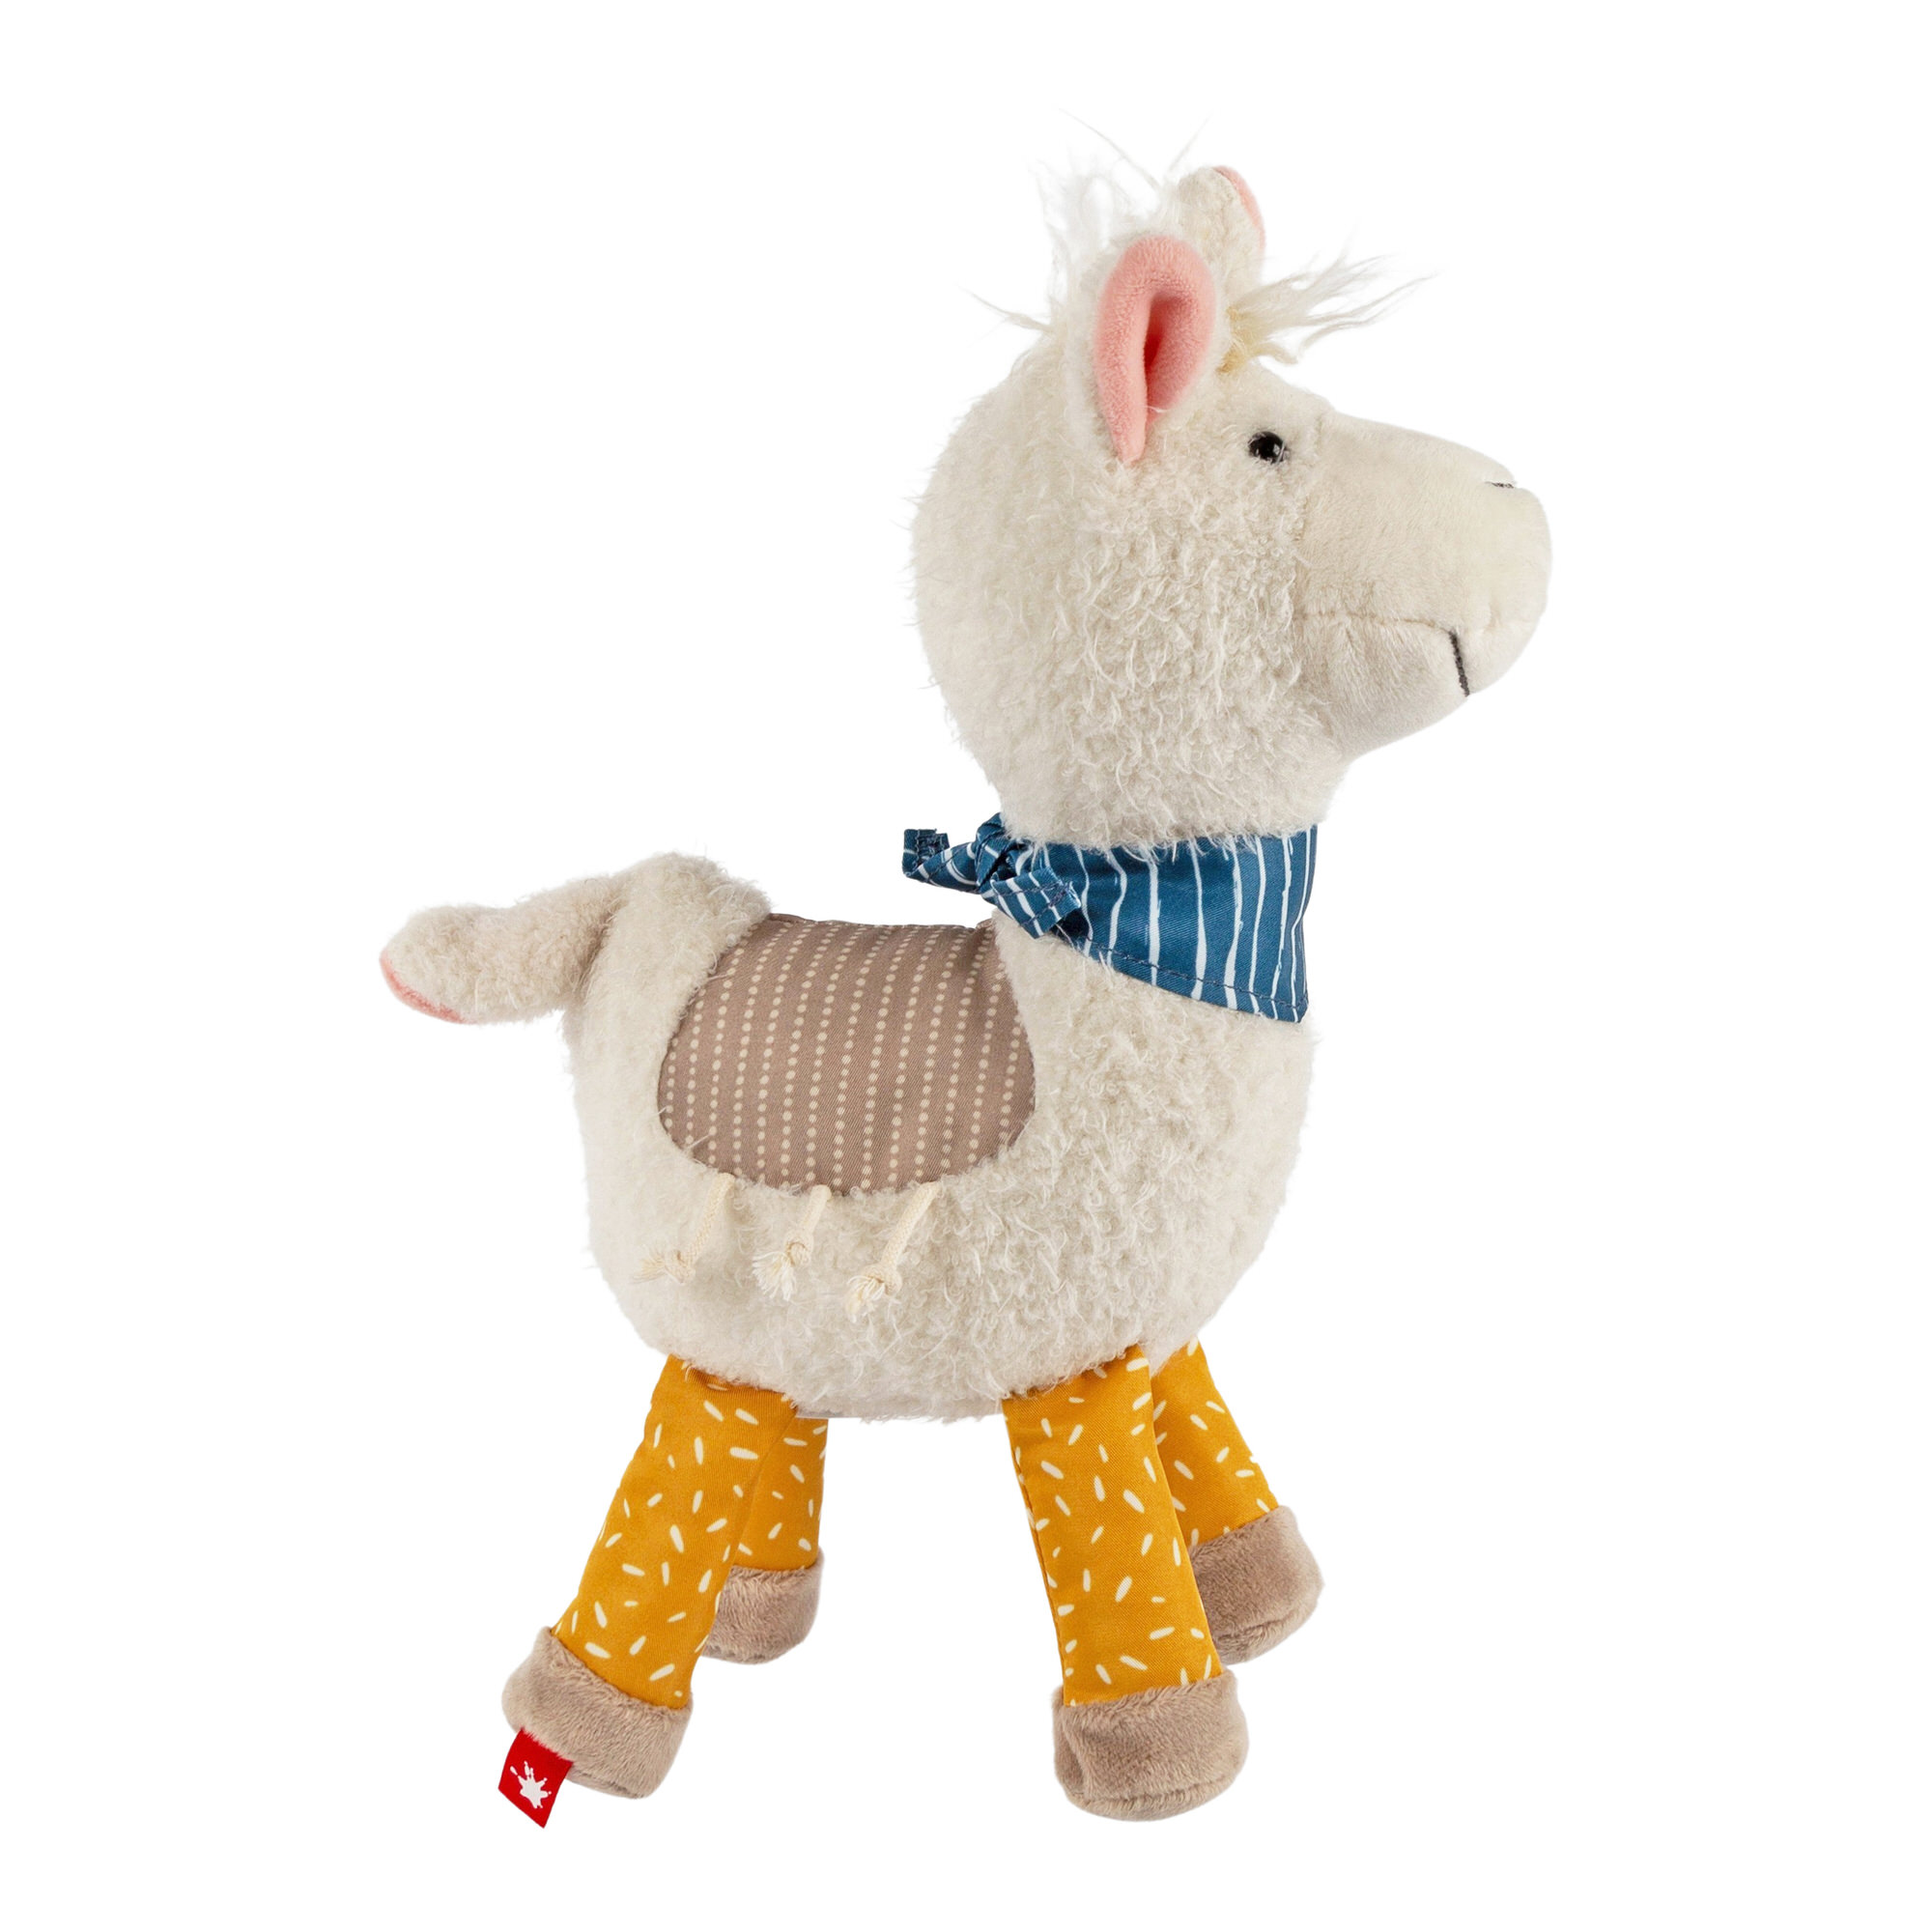 Patchwork soft toy llama